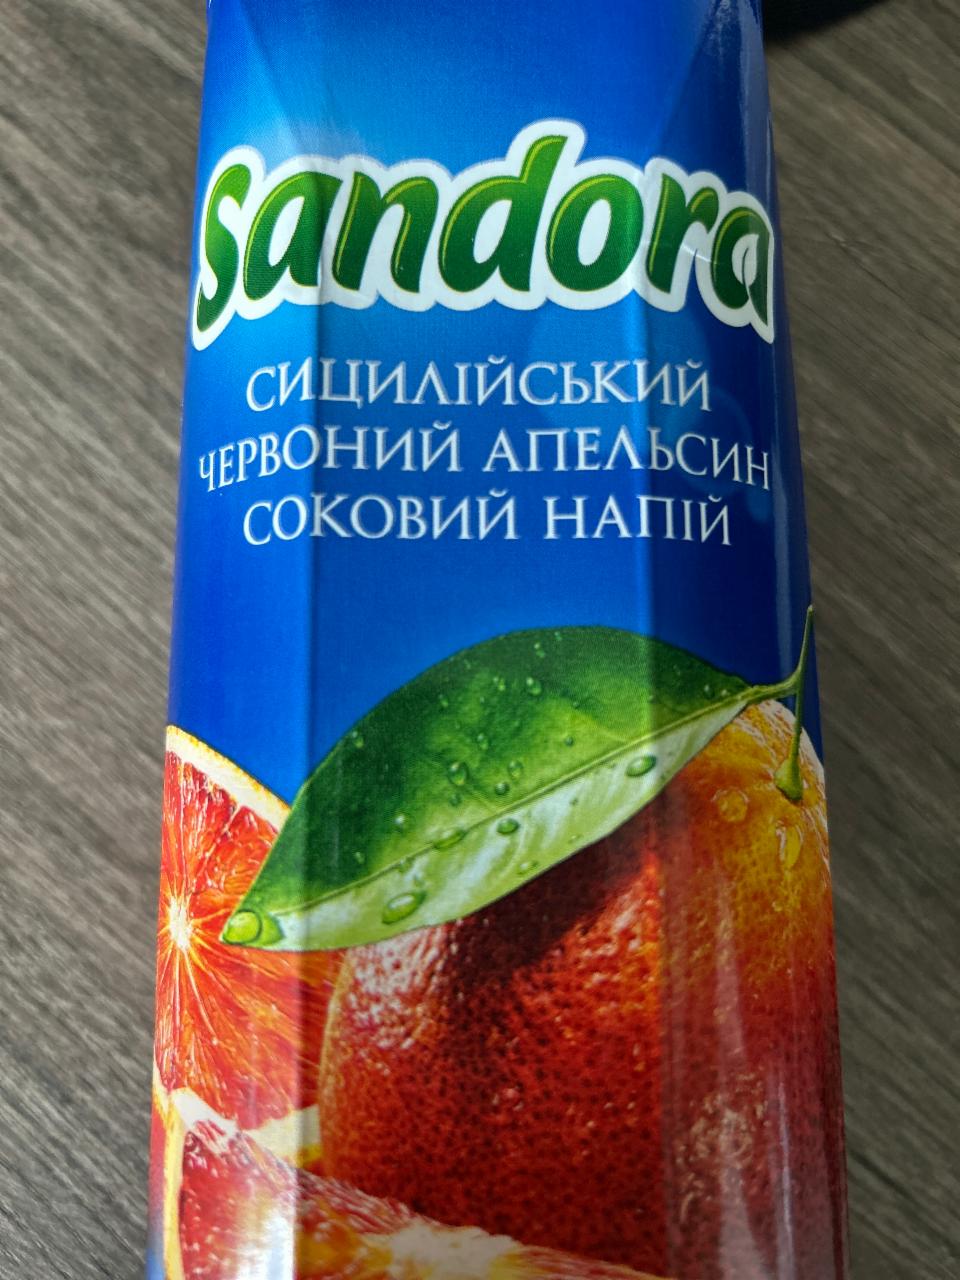 Fotografie - Cицилийский красный апельсин cоковый напиток Sandora